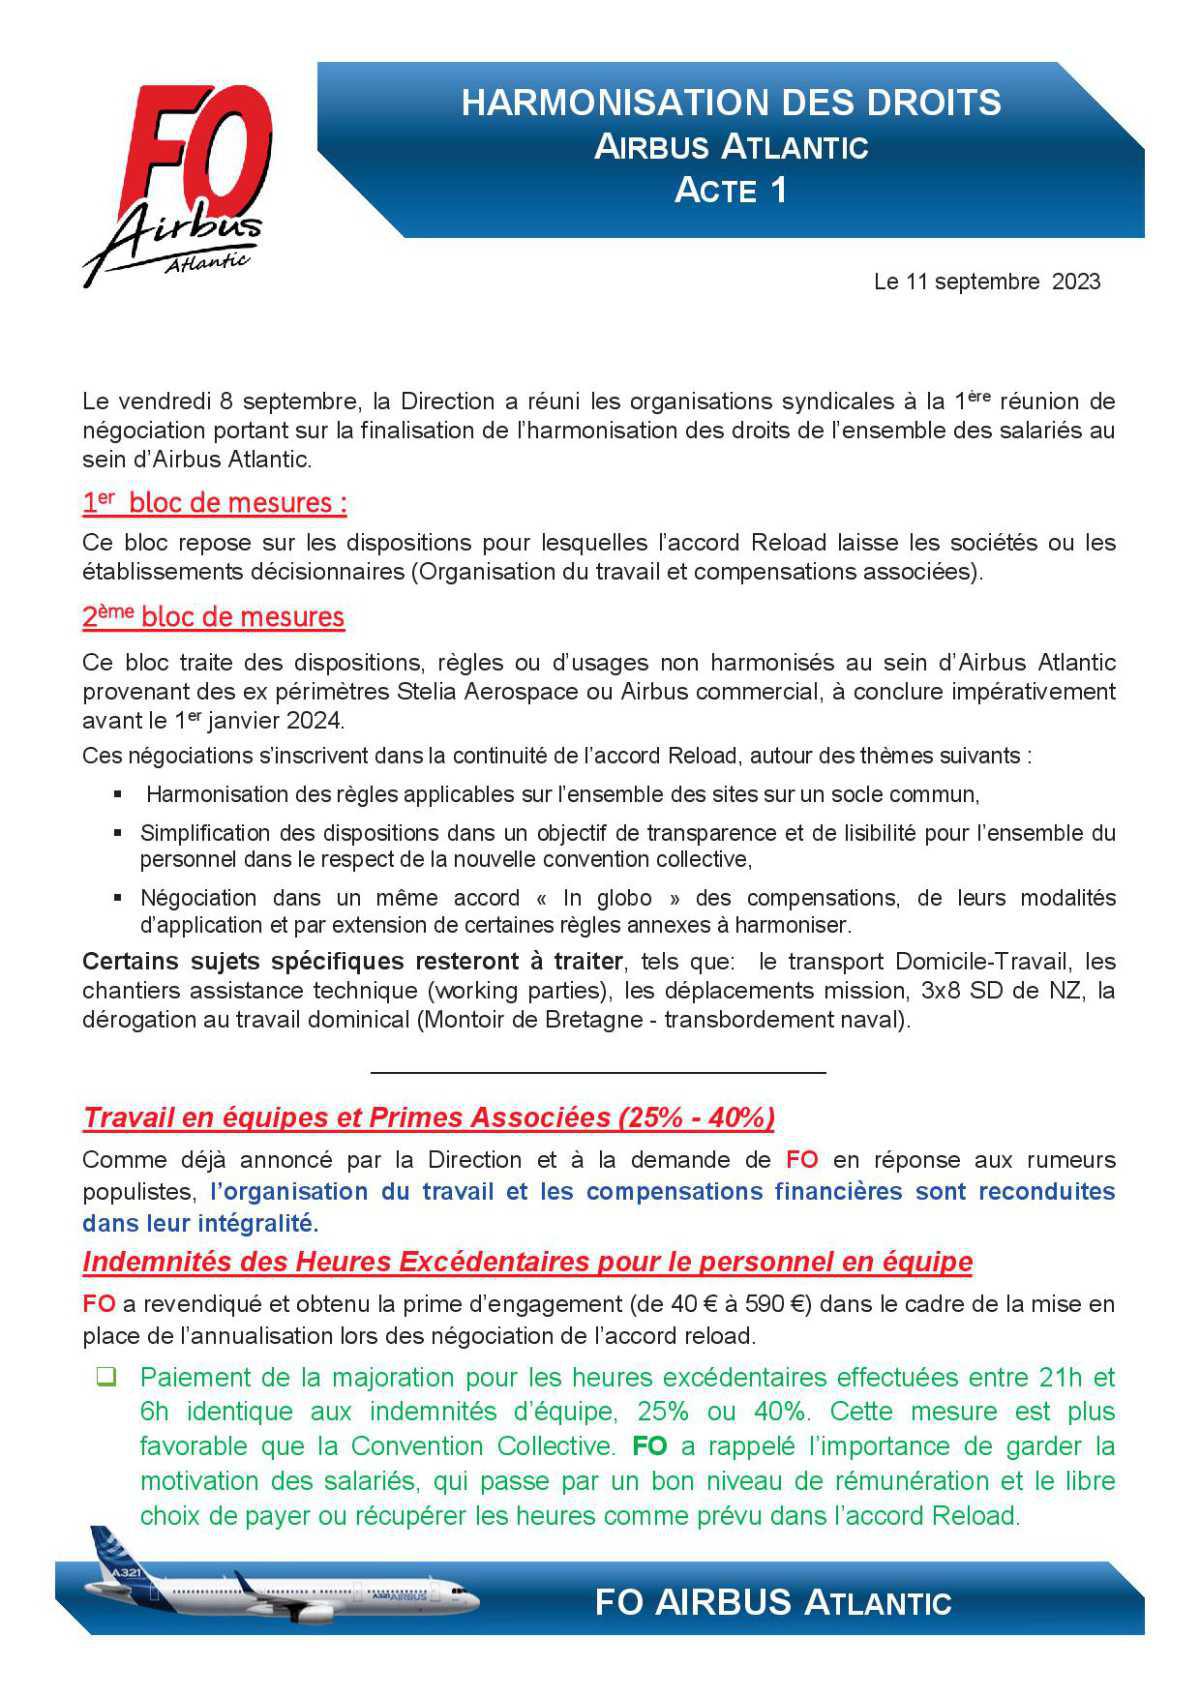 HARMONISATION DES DROITS AIRBUS ATLANTIC- 1ere Réunion